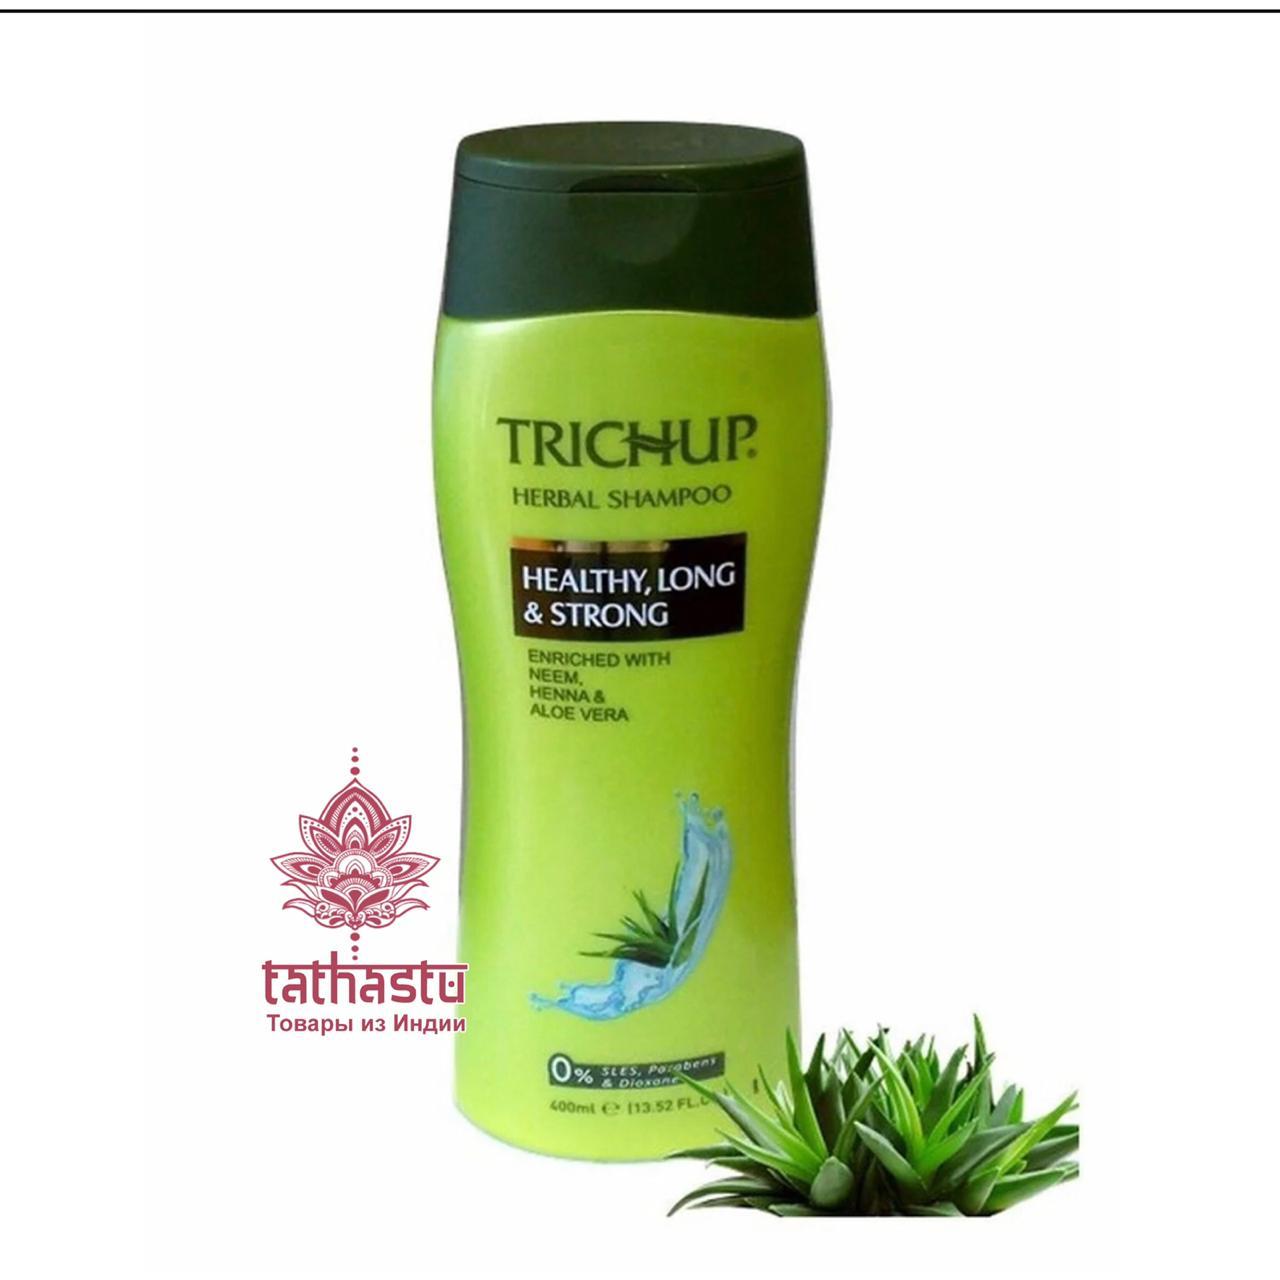 Шампунь Тричуп - эффективное средство для укрепления волос и оздоровления кожи головы. Tathastu товары и индии